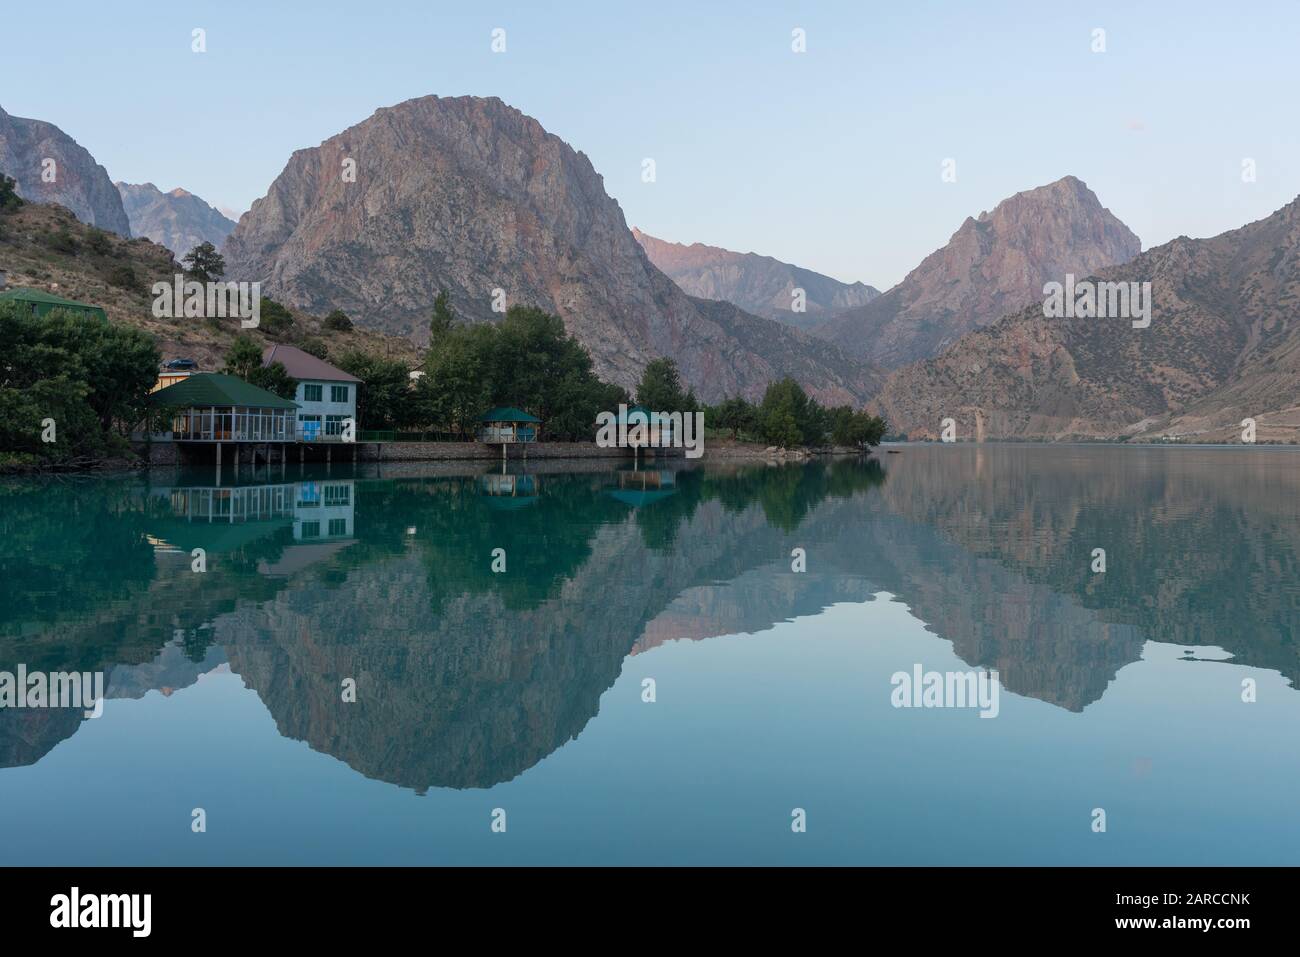 Edifici turistici sul bordo delle acque turchesi del lago Iskanderkul in Tagikistan con le montagne sullo sfondo Foto Stock